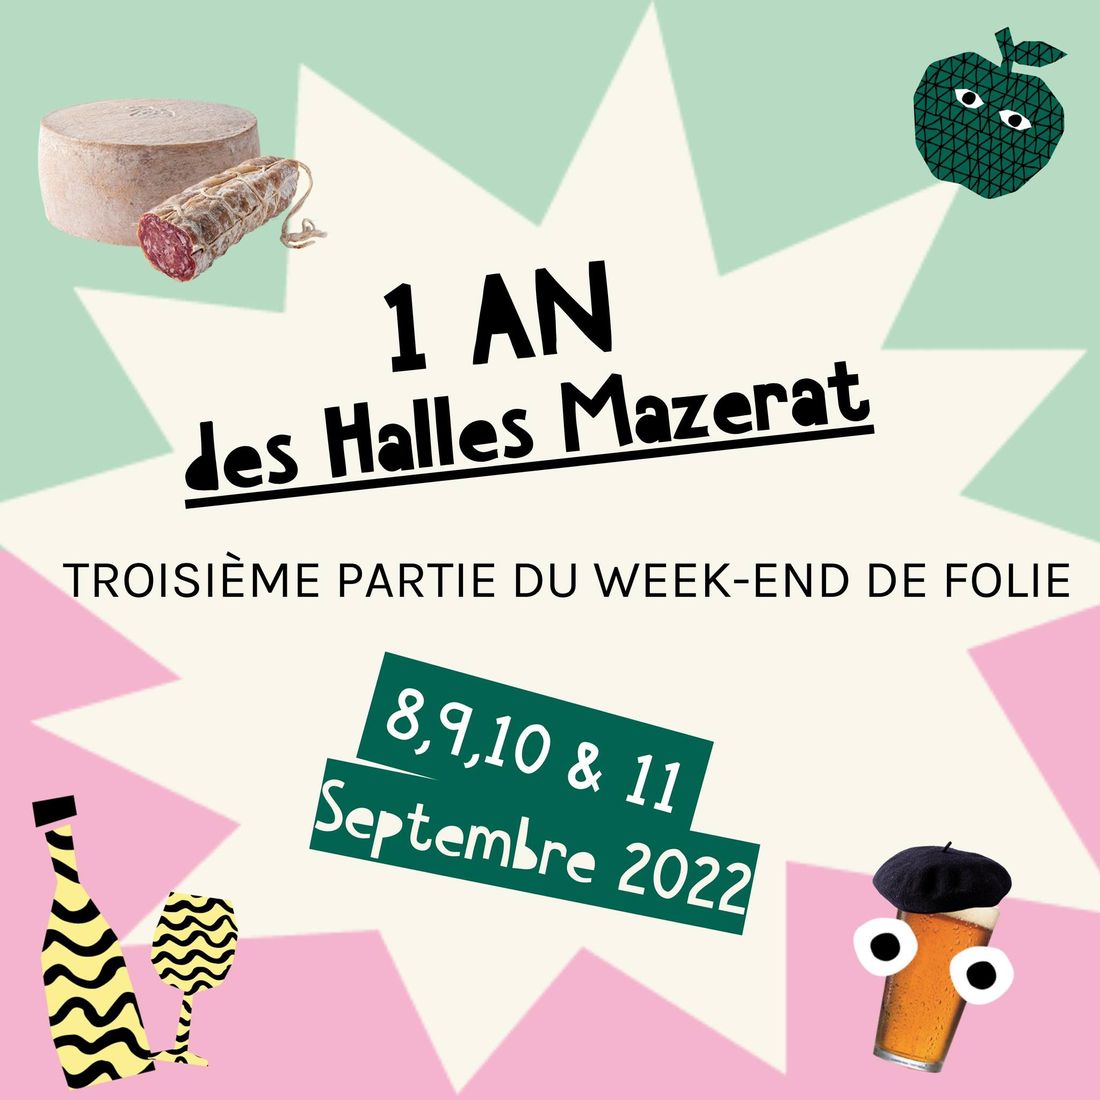 1 an des Halles Mazerat à St-Etienne